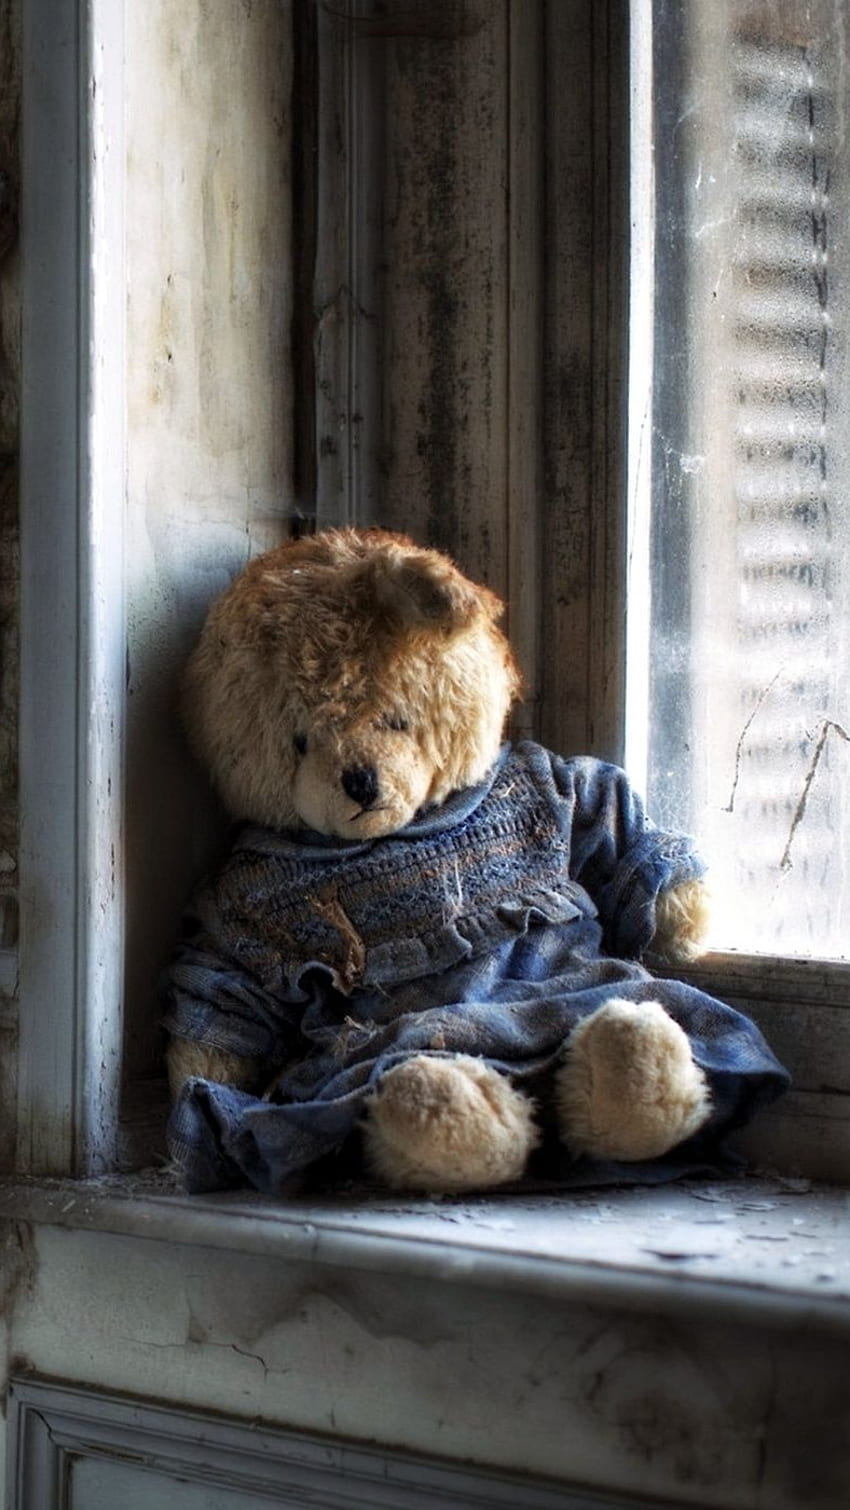 720P Free download | Teddy Bear Ka, Sad, Alone Teddy Bear, alone, teddy ...